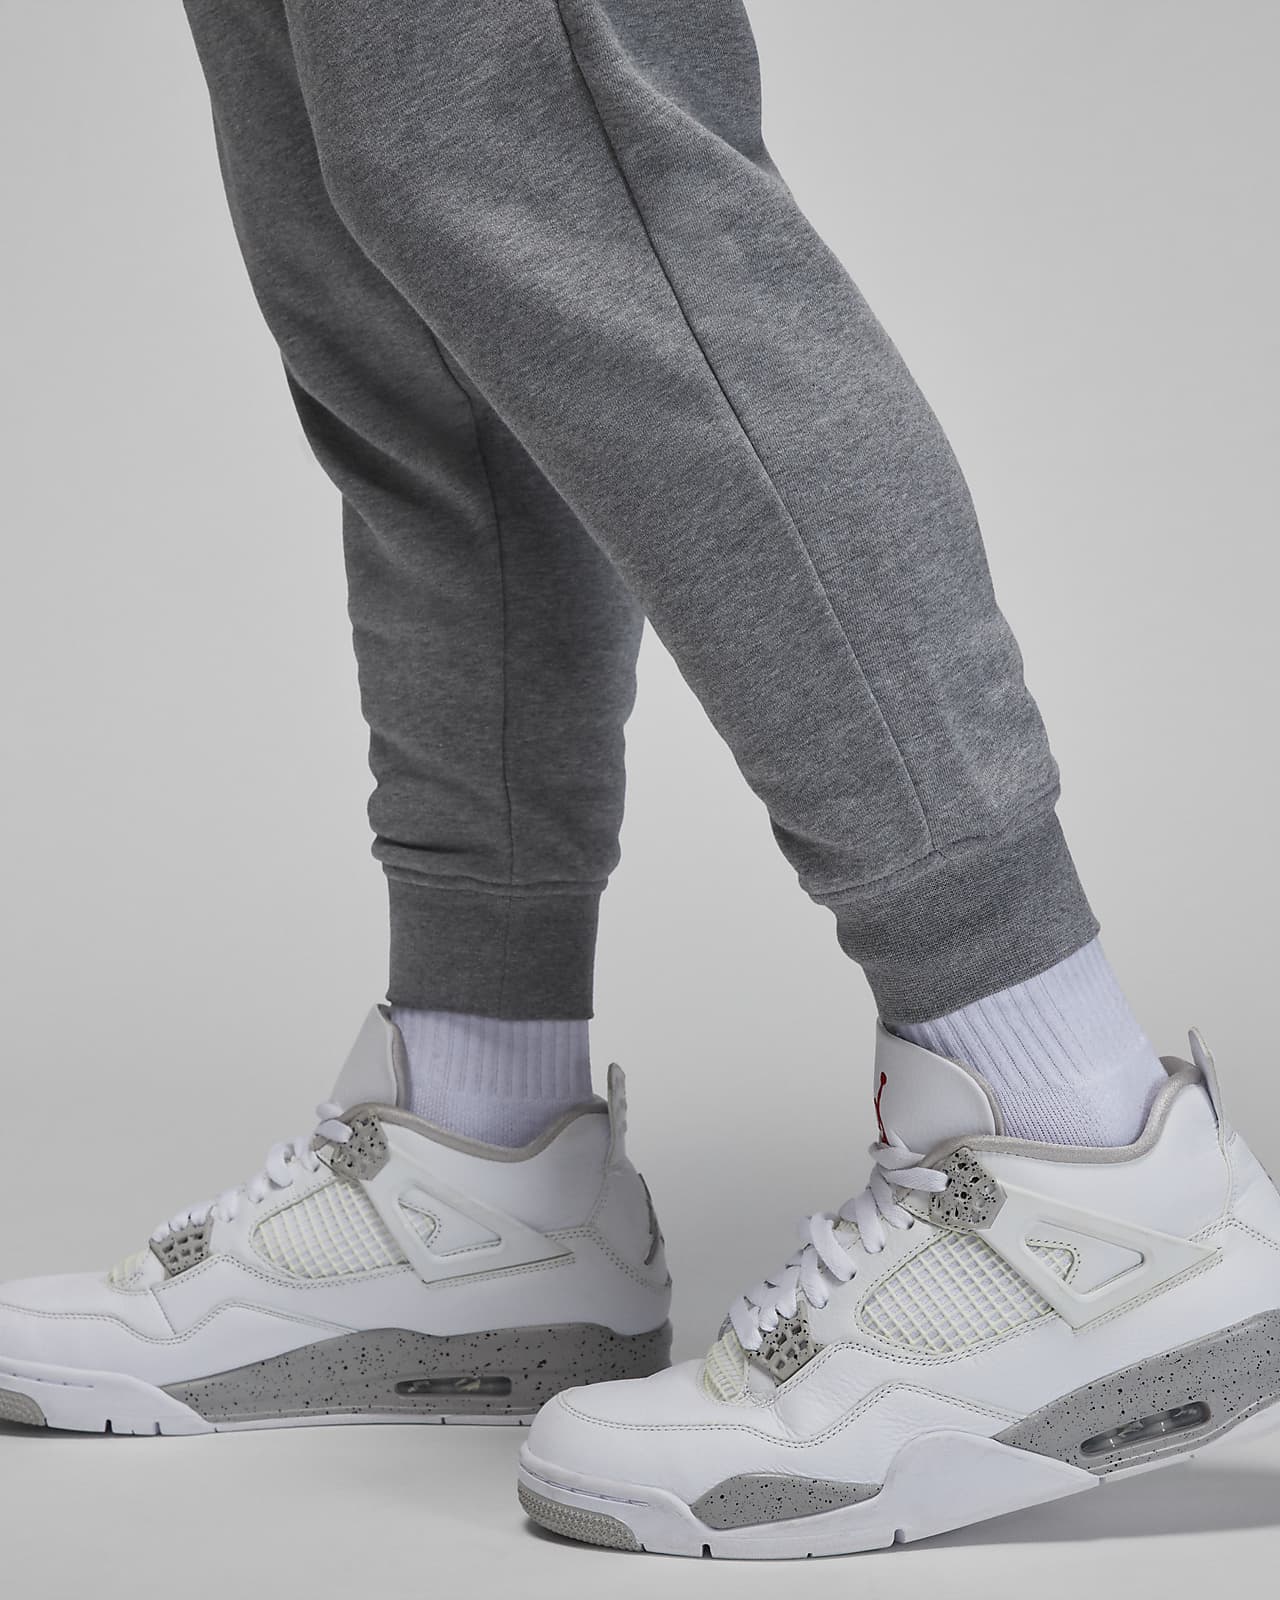  Nike Jordan Essentials Men's Fleece Pants, Black